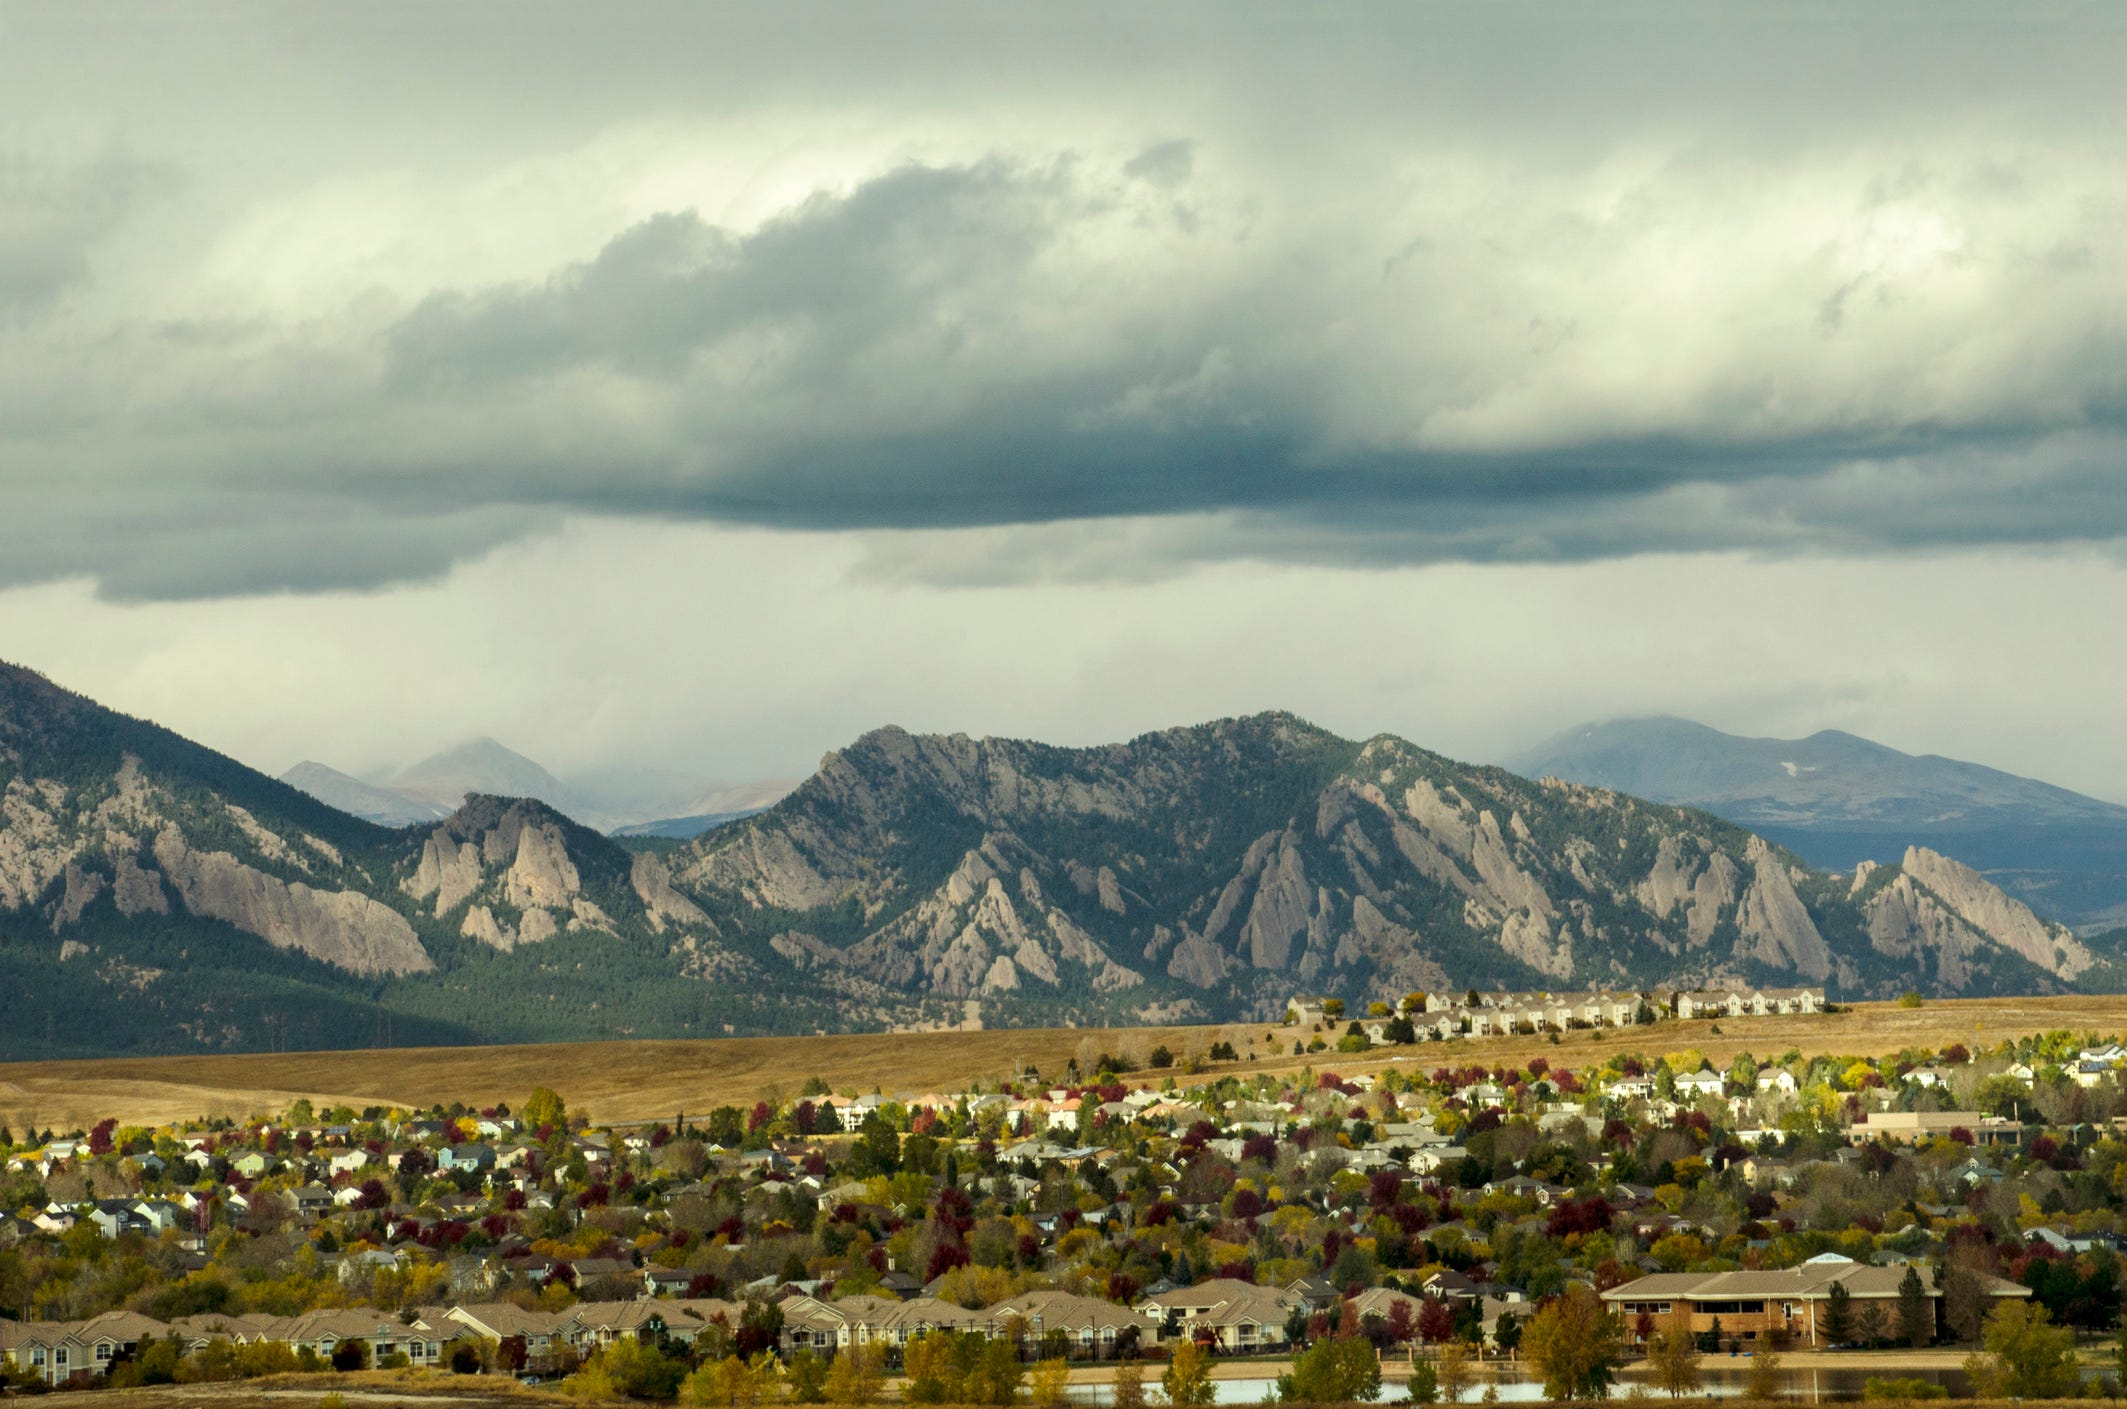 Die Zersiedelung der Siedlungen in Broomfield, Colorado, nähert sich der majestätischen Bergkette der Flatiron Mountains.